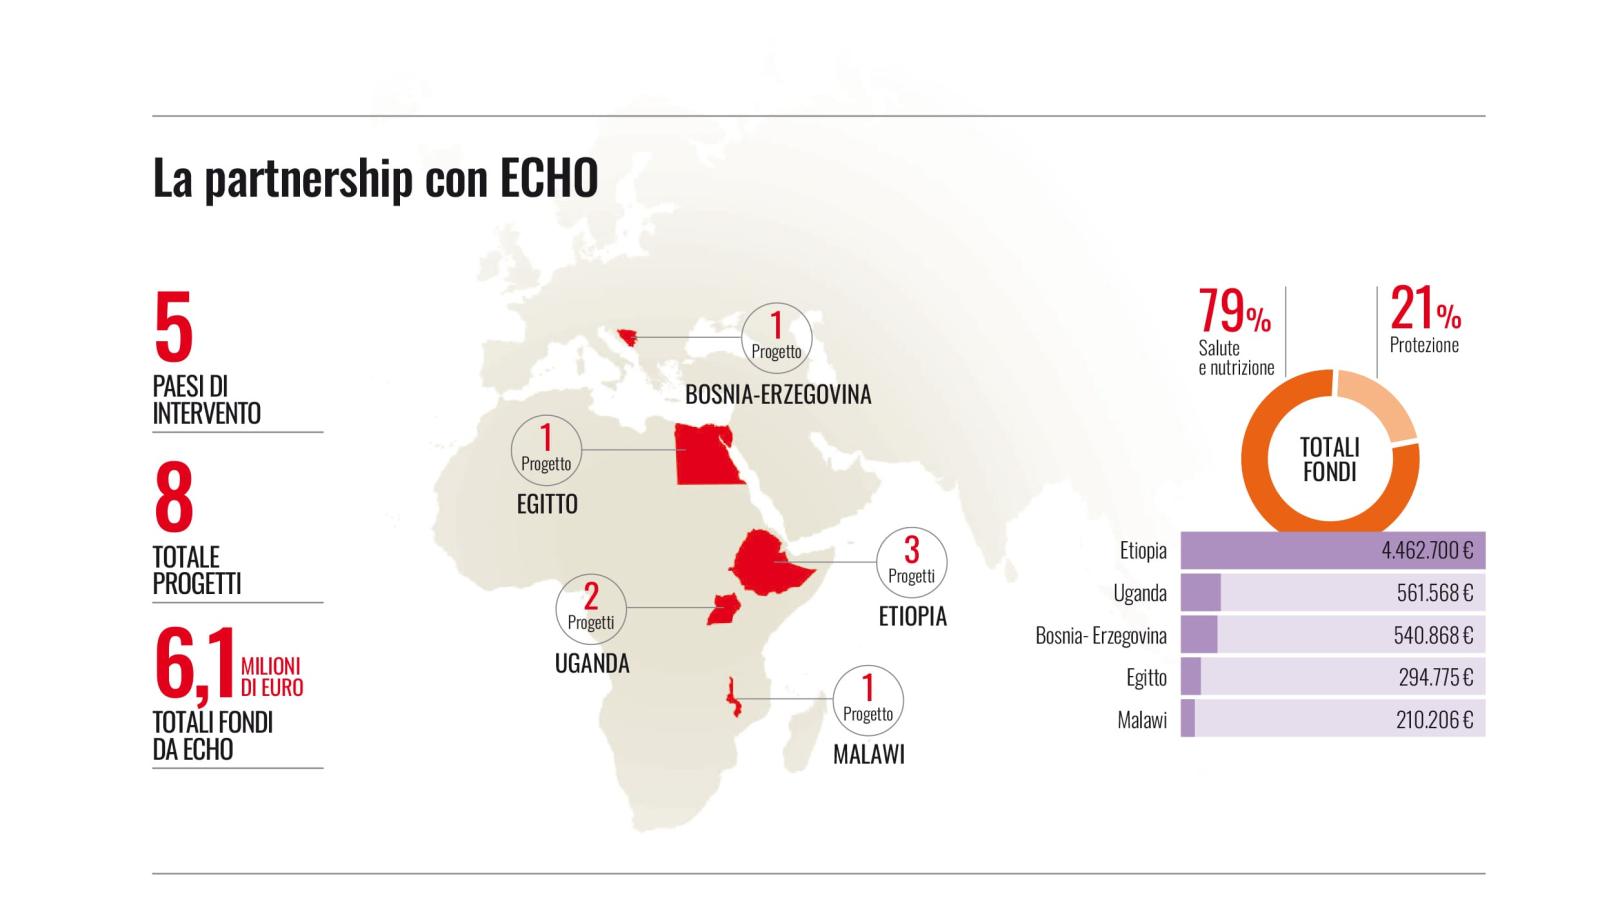 Infografica descrittiva sui progetti in partnership con ECHO 